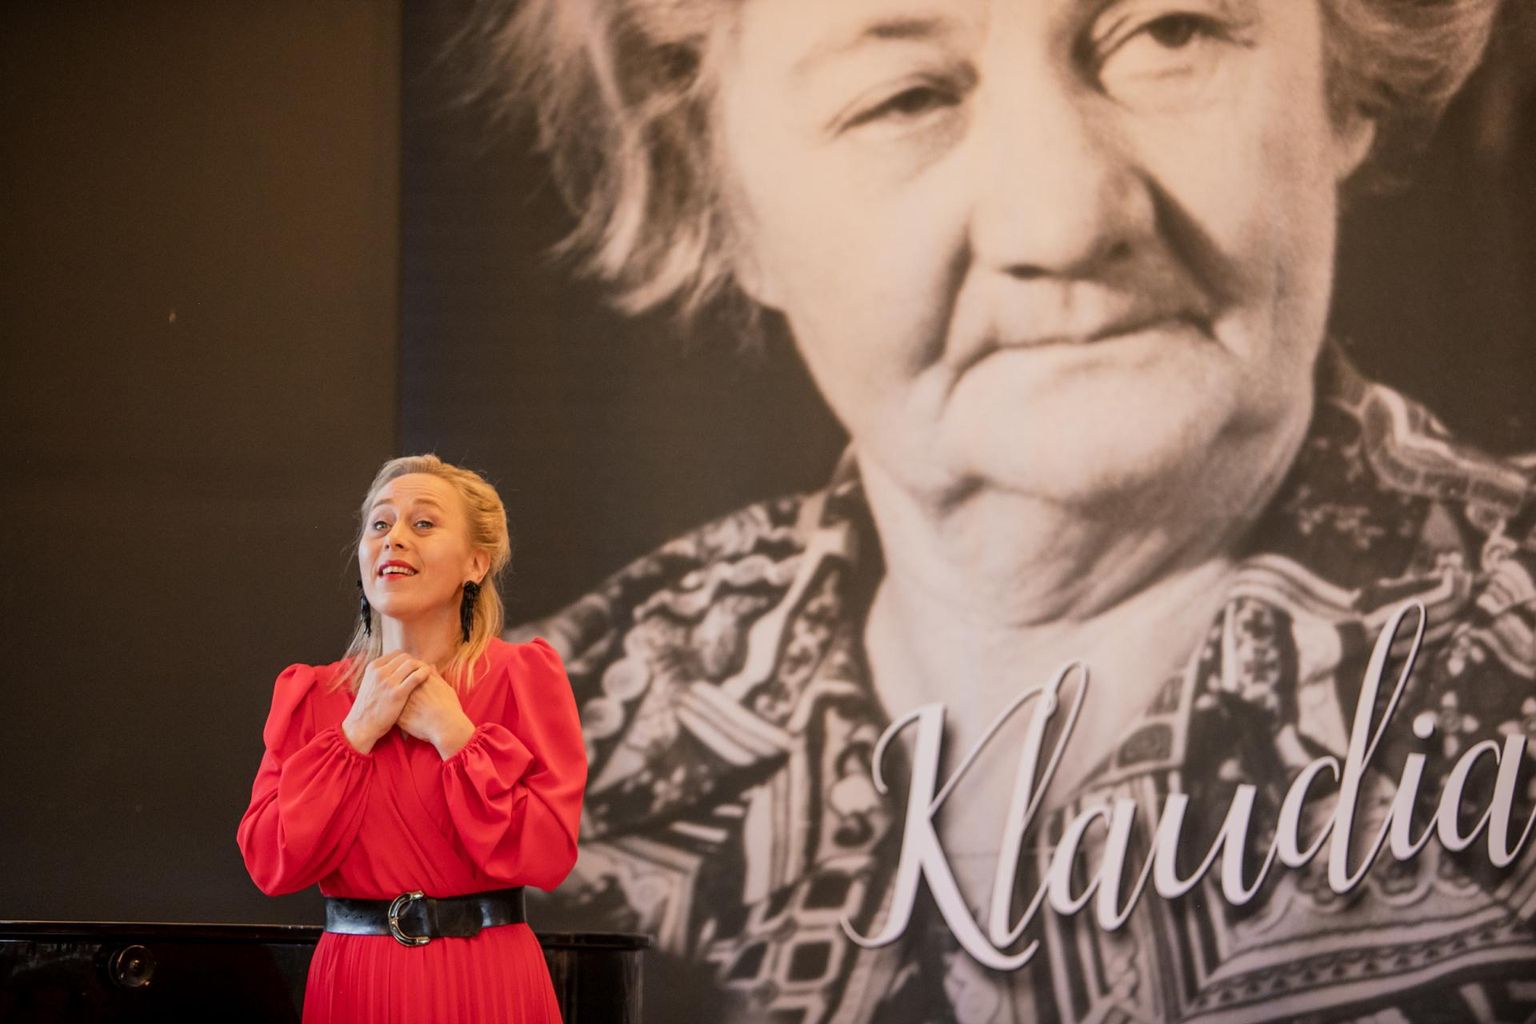 Mälestuskontserdil astus üles esimese Klaudia Taevi nimelise konkursi võitnud sopran Kristina Vähi, oma õpetajat meenutas Helve Kase, üritust juhtis konkursi asutaja ning president Toomas Kuter.